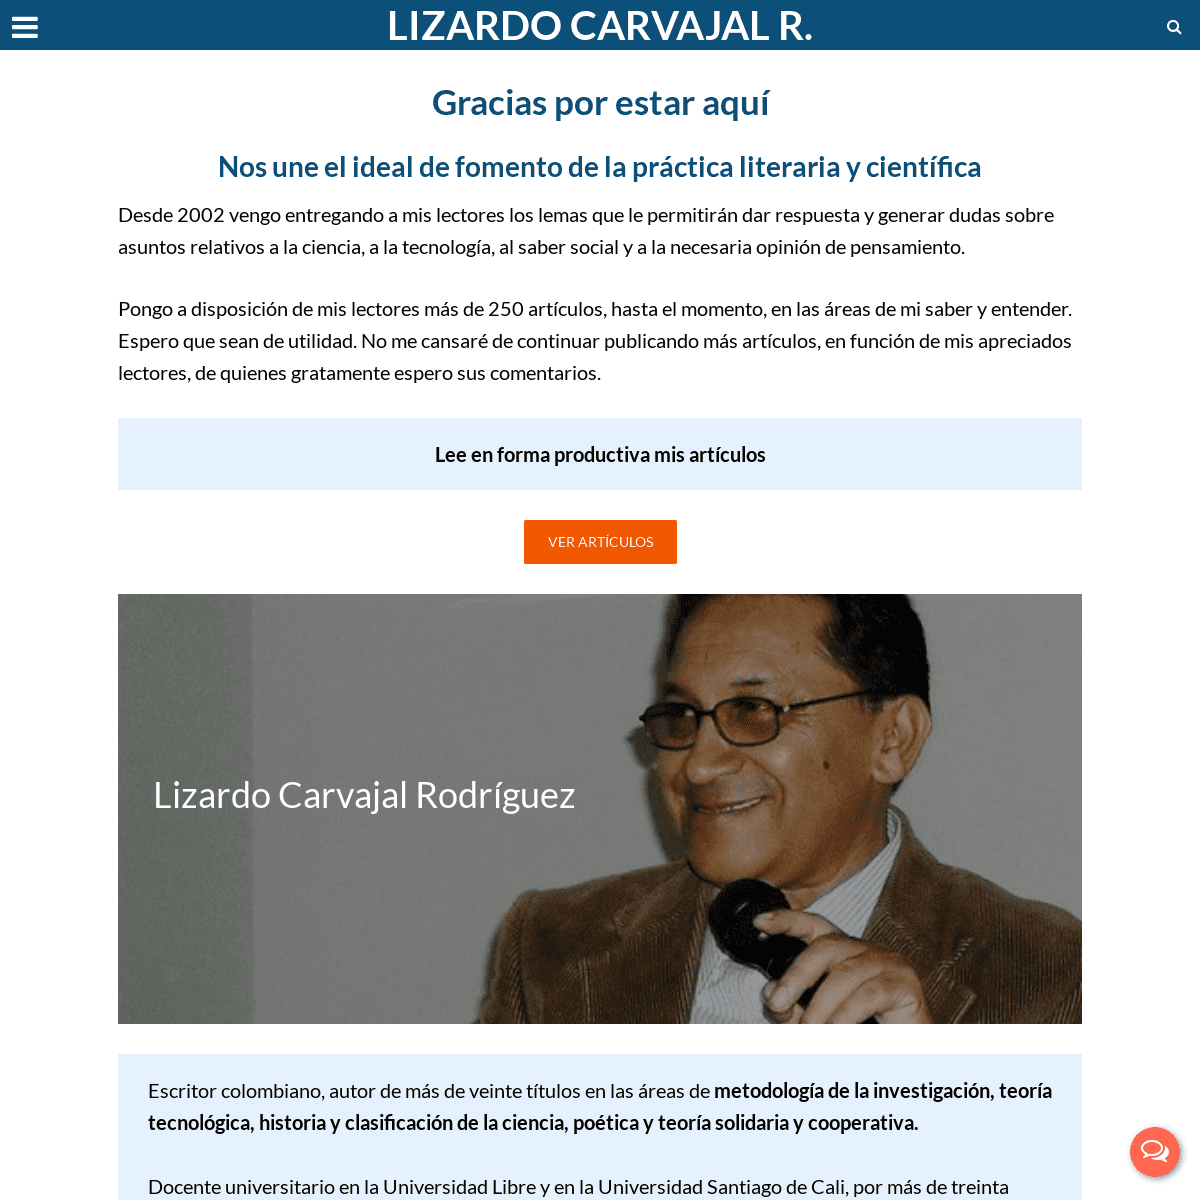 Lizardo Carvajal R. | Un sitio para el fomento de la práctica literaria y científica